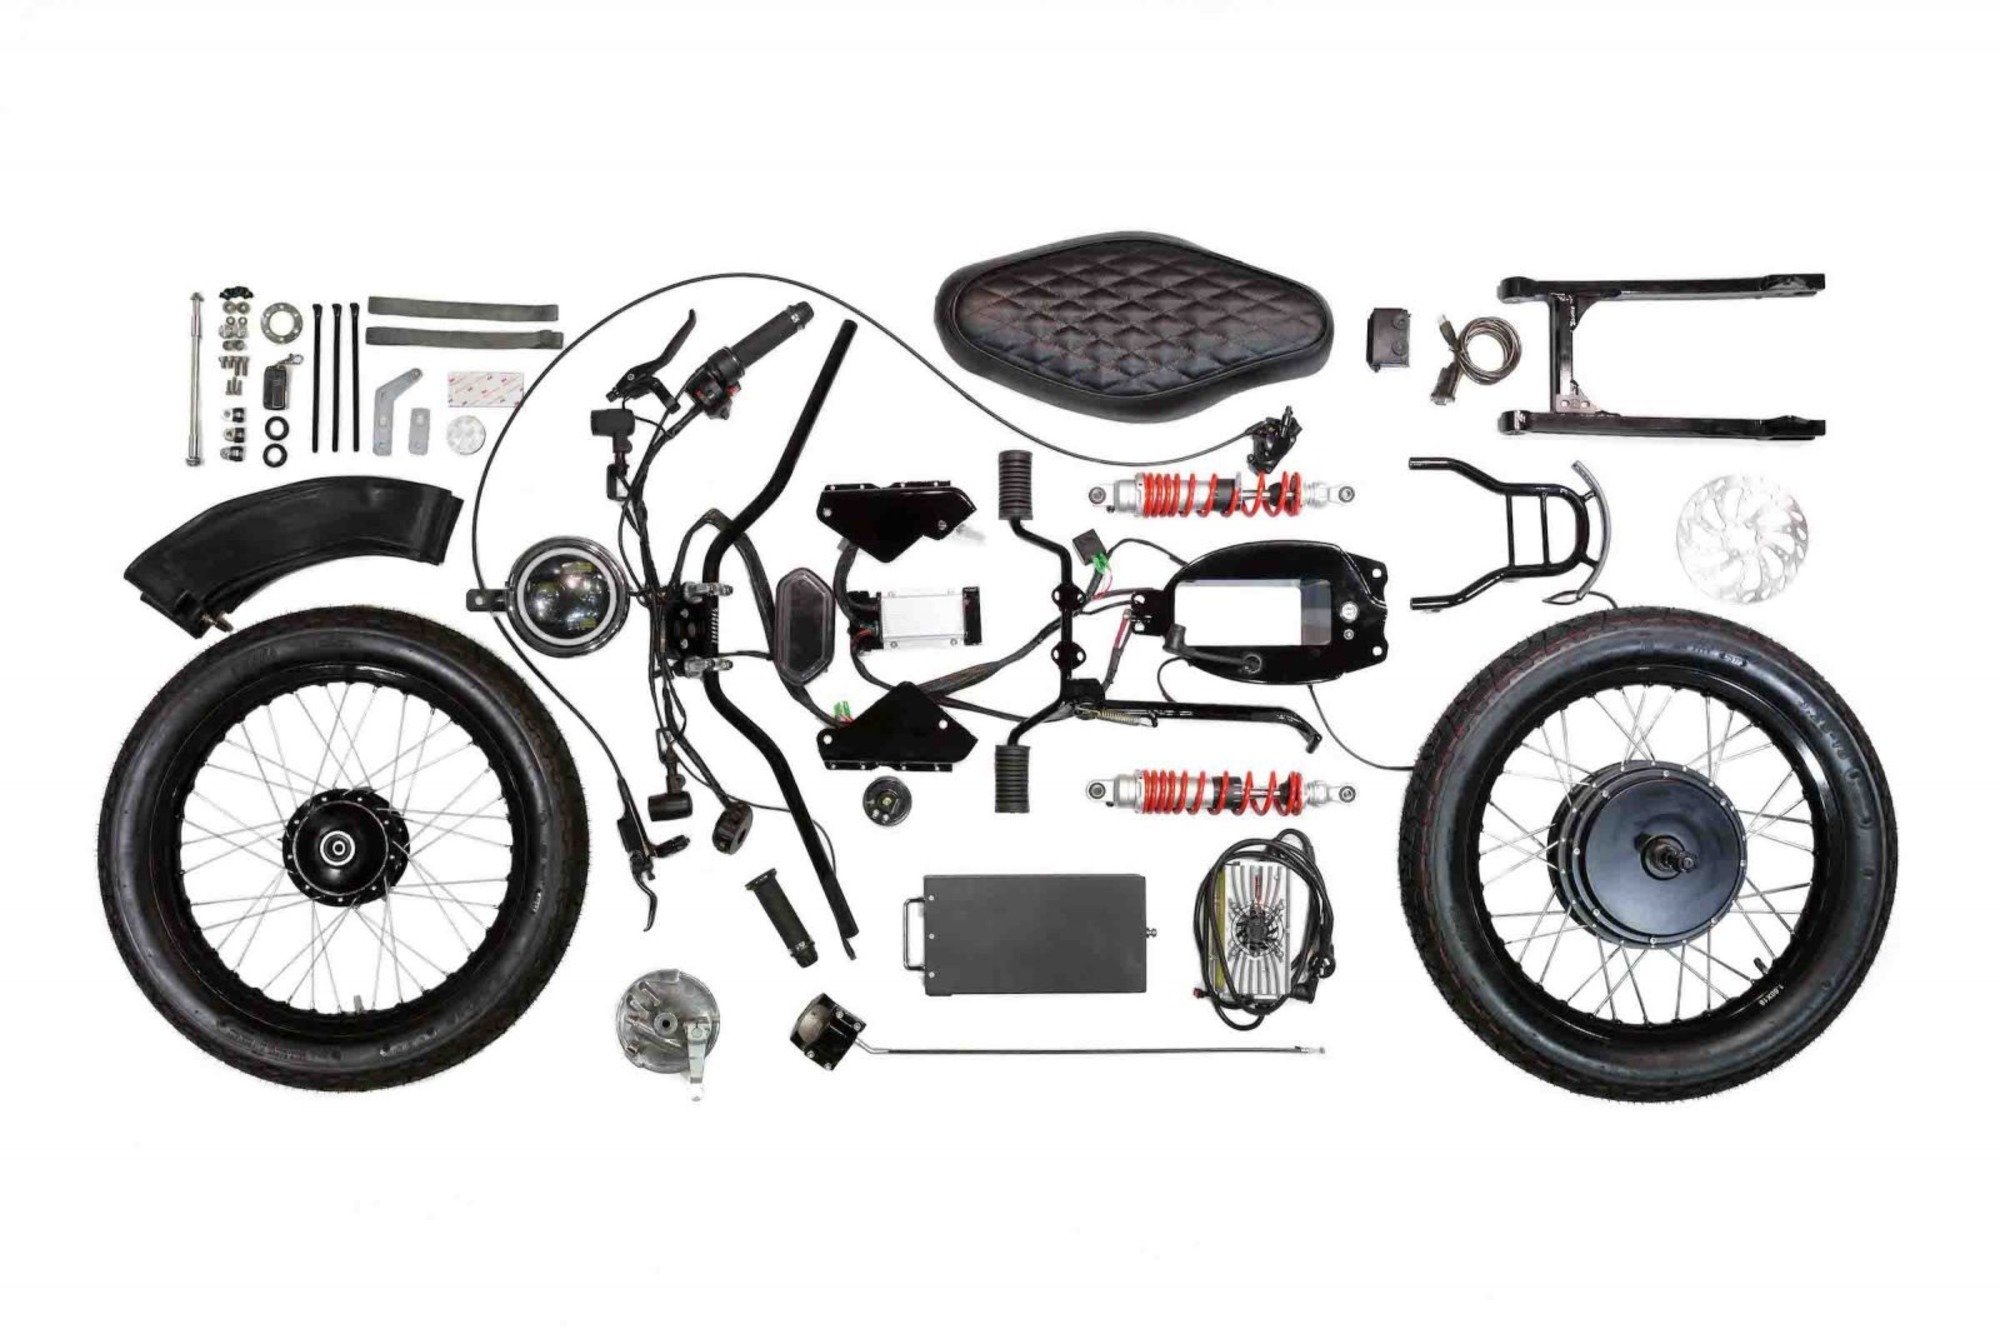 Honda eCub, il kit plug and play per rendere lo scooter di Honda elettrico e green